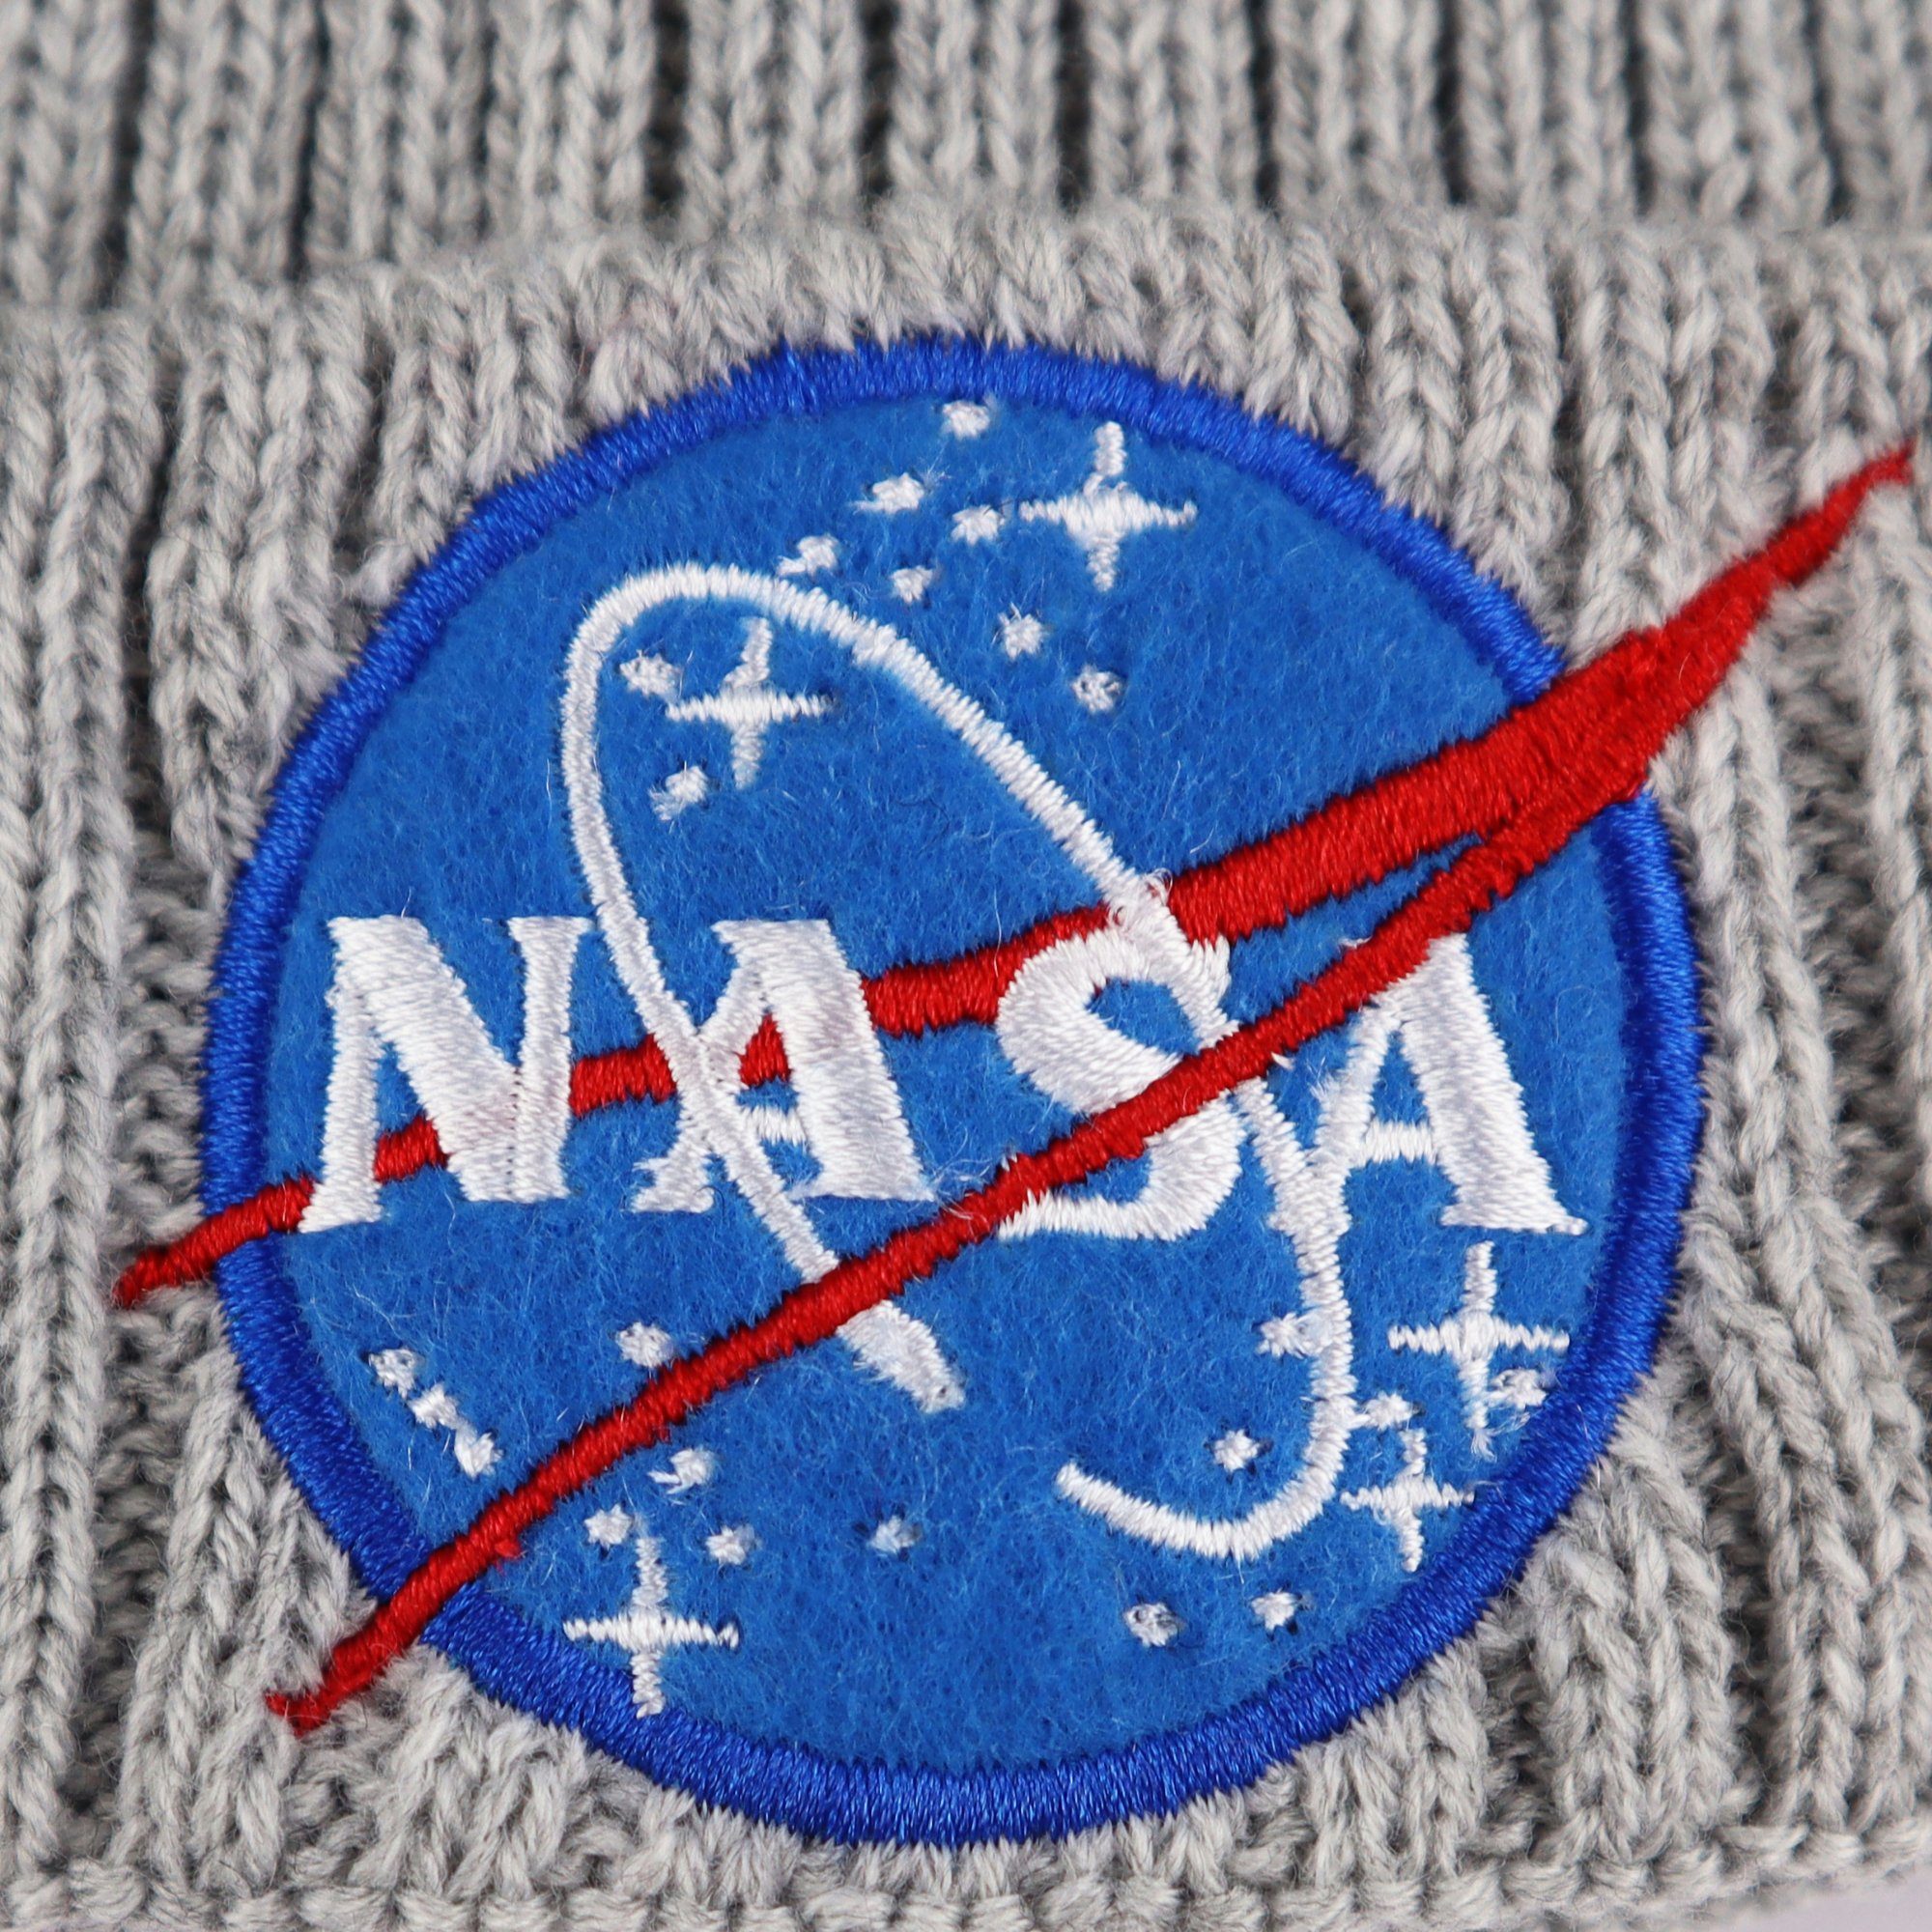 Gr. 54 56 Center Bommelmütze - Damen Space Wintermütze NASA Bommelmütze Herbst NASA bis Mädchen